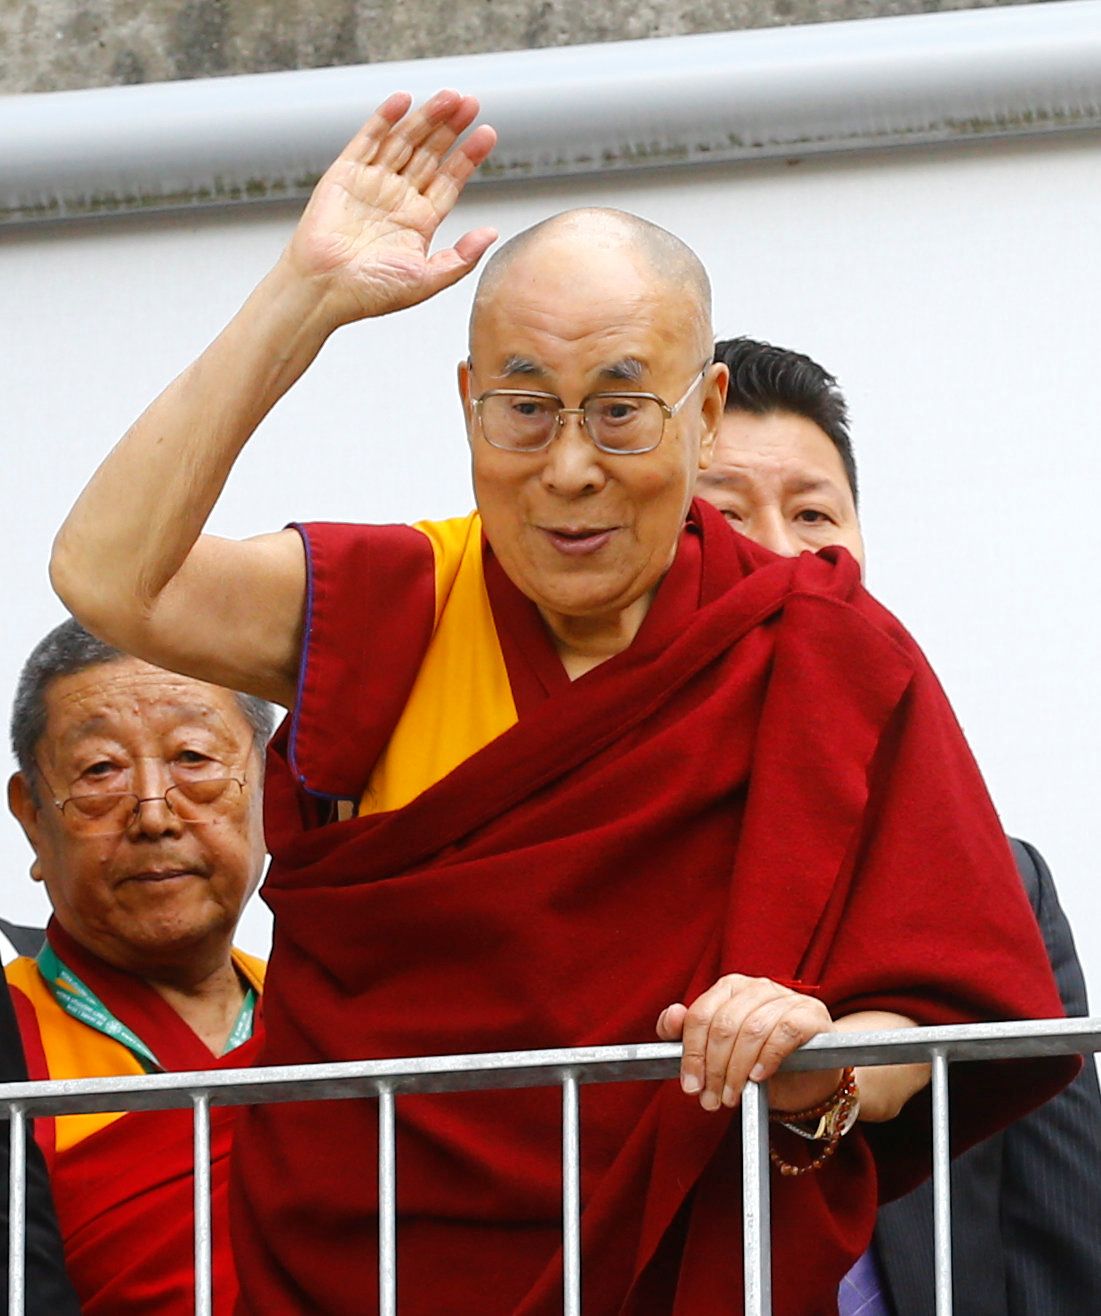 صورة من أرشيف رويترز للدالاي لاما الزعيم الروحي للتبت.